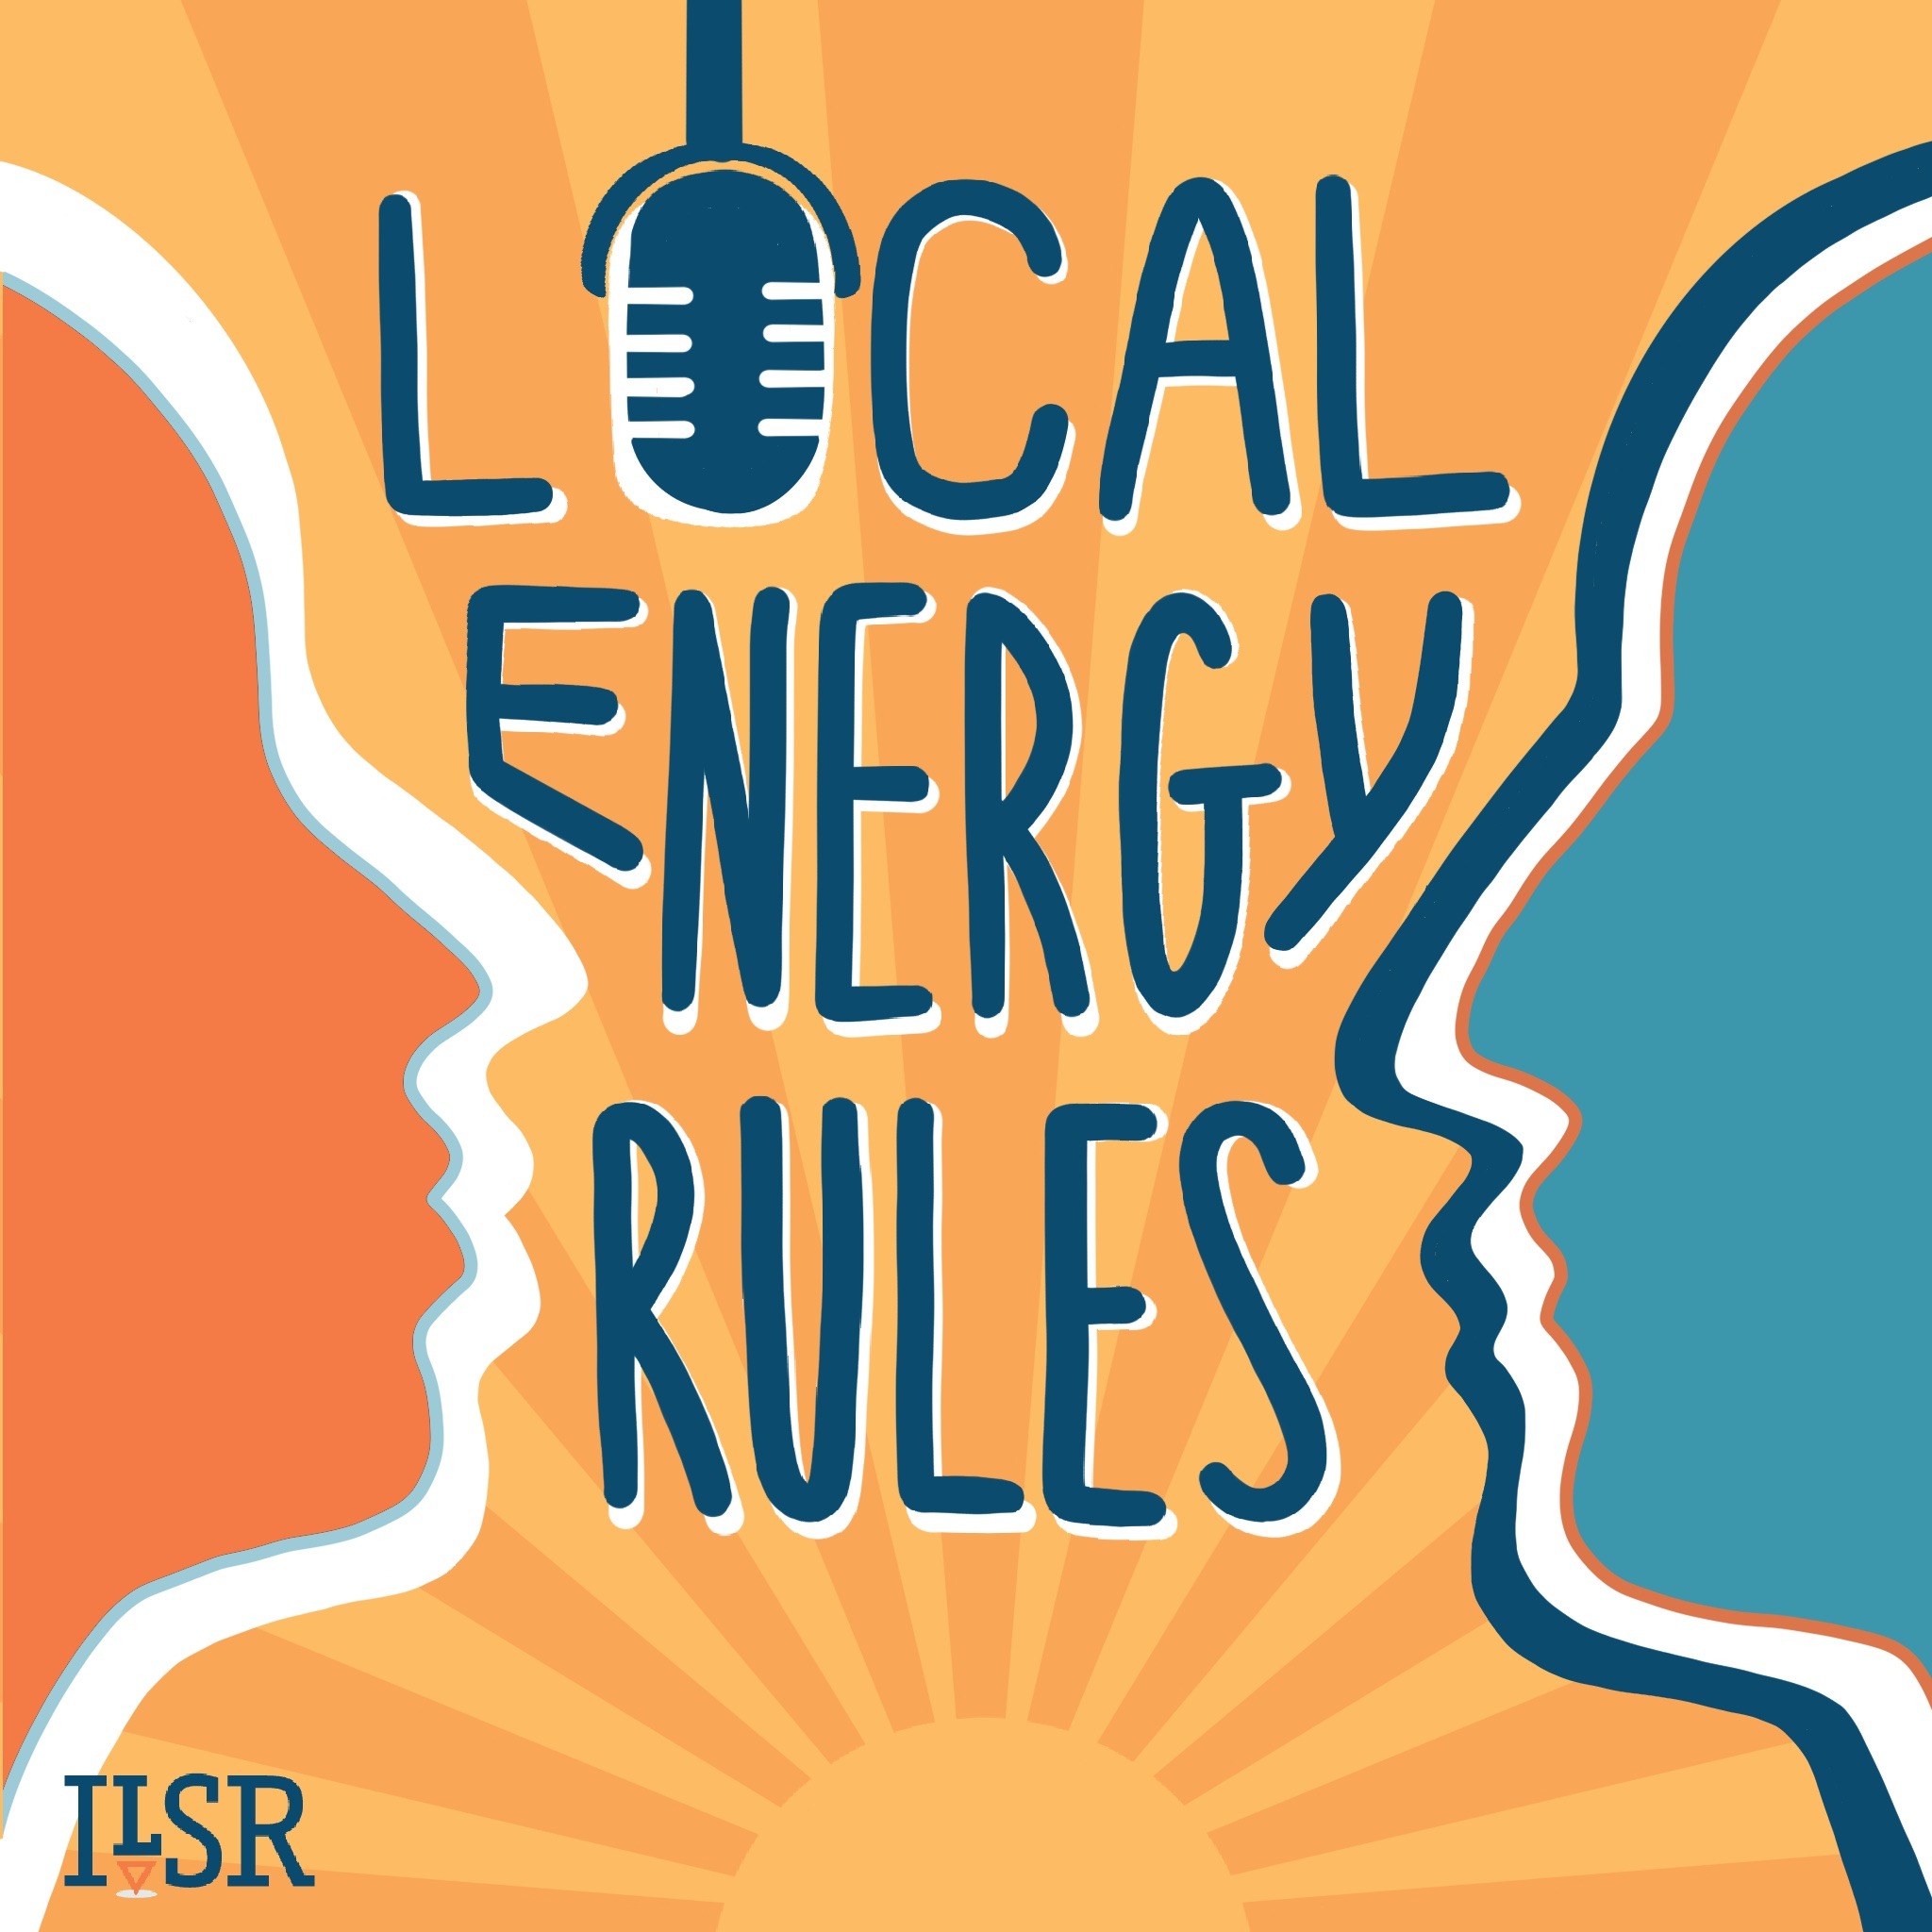 https://cdn.ilsr.org/wp-content/uploads/2021/09/Local-Energy-Rules-logo-2021.jpg